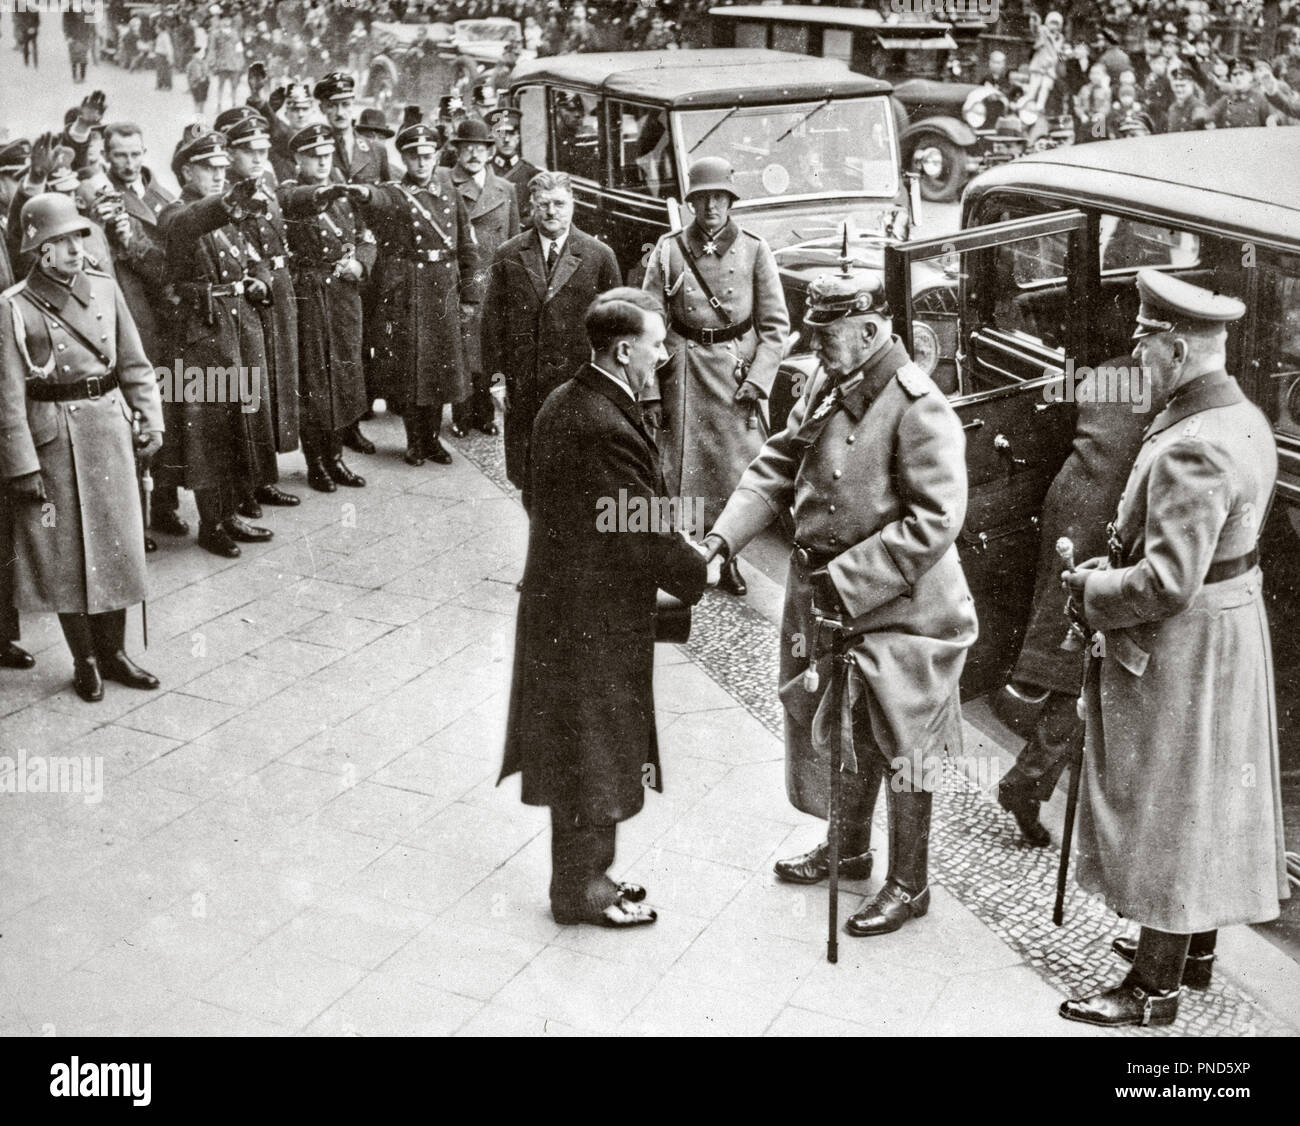 1930 30 janvier 1933 NOUVELLE Adolf Hitler Chancelier de l'Allemagne accueille le président allemand Paul von Hindenburg - q72071 CPC001 VICTOIRE HARS JANVIER STRATÉGIE LEADERSHIP ORIENTATION FORTE EXCITATION AUTORITÉ POLITIQUE PROFESSIONS OCCASION serrant la main d'Adolf Hitler nazi homme âgé accueille 1933 Photographie noir et blanc à l'ANCIENNE chancelière de l'origine ethnique caucasienne Banque D'Images